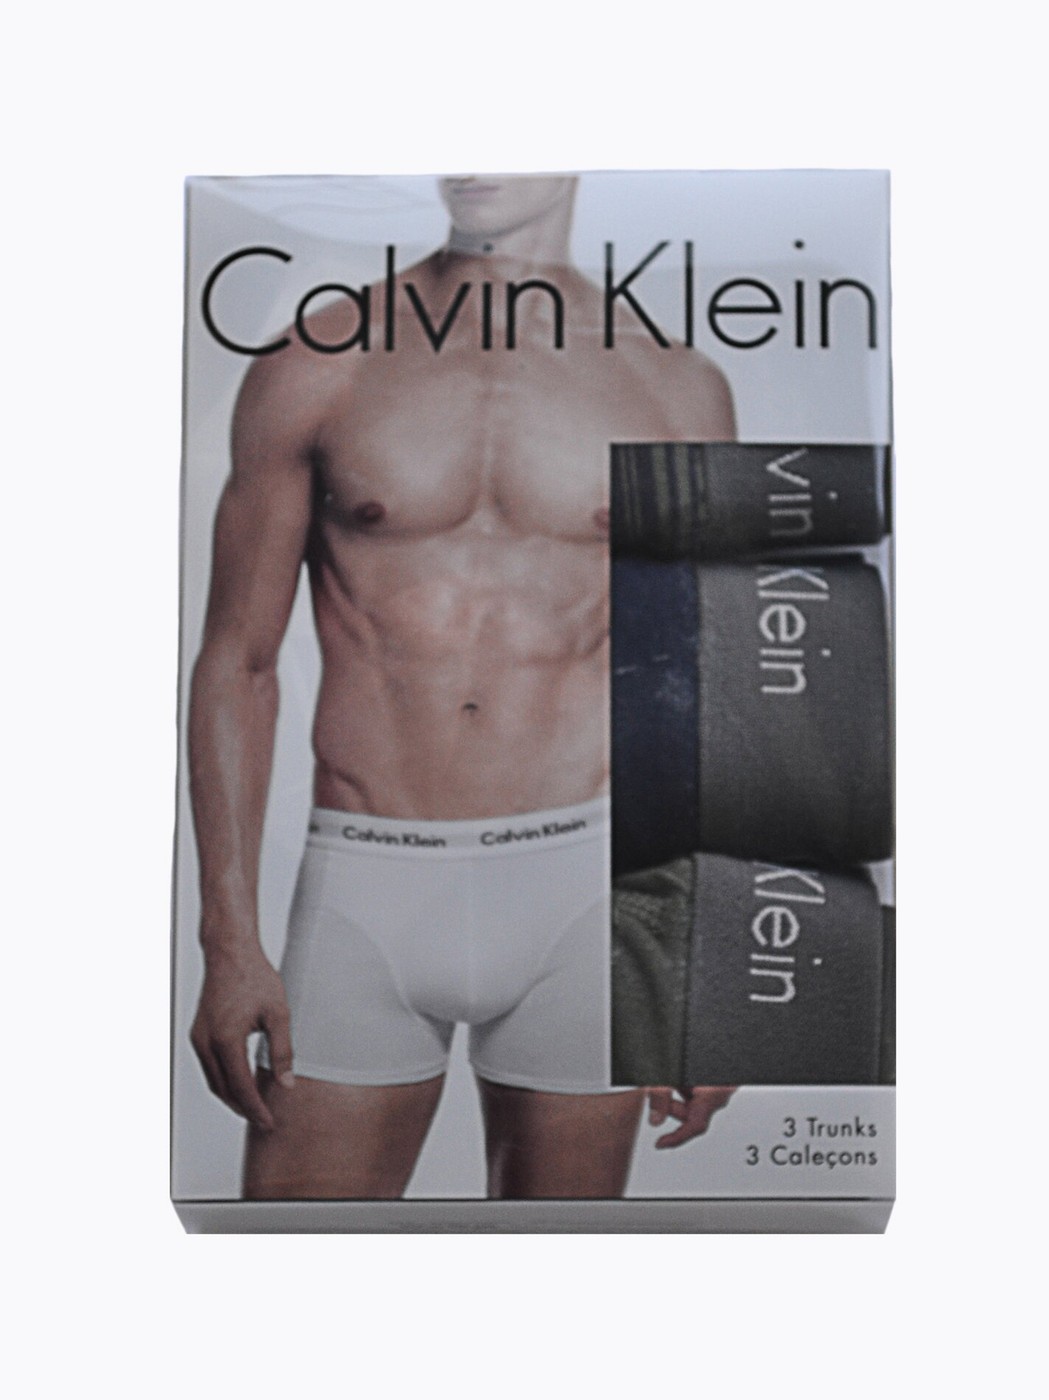 Набор нижнего белья Calvin Klein (3 шт.)